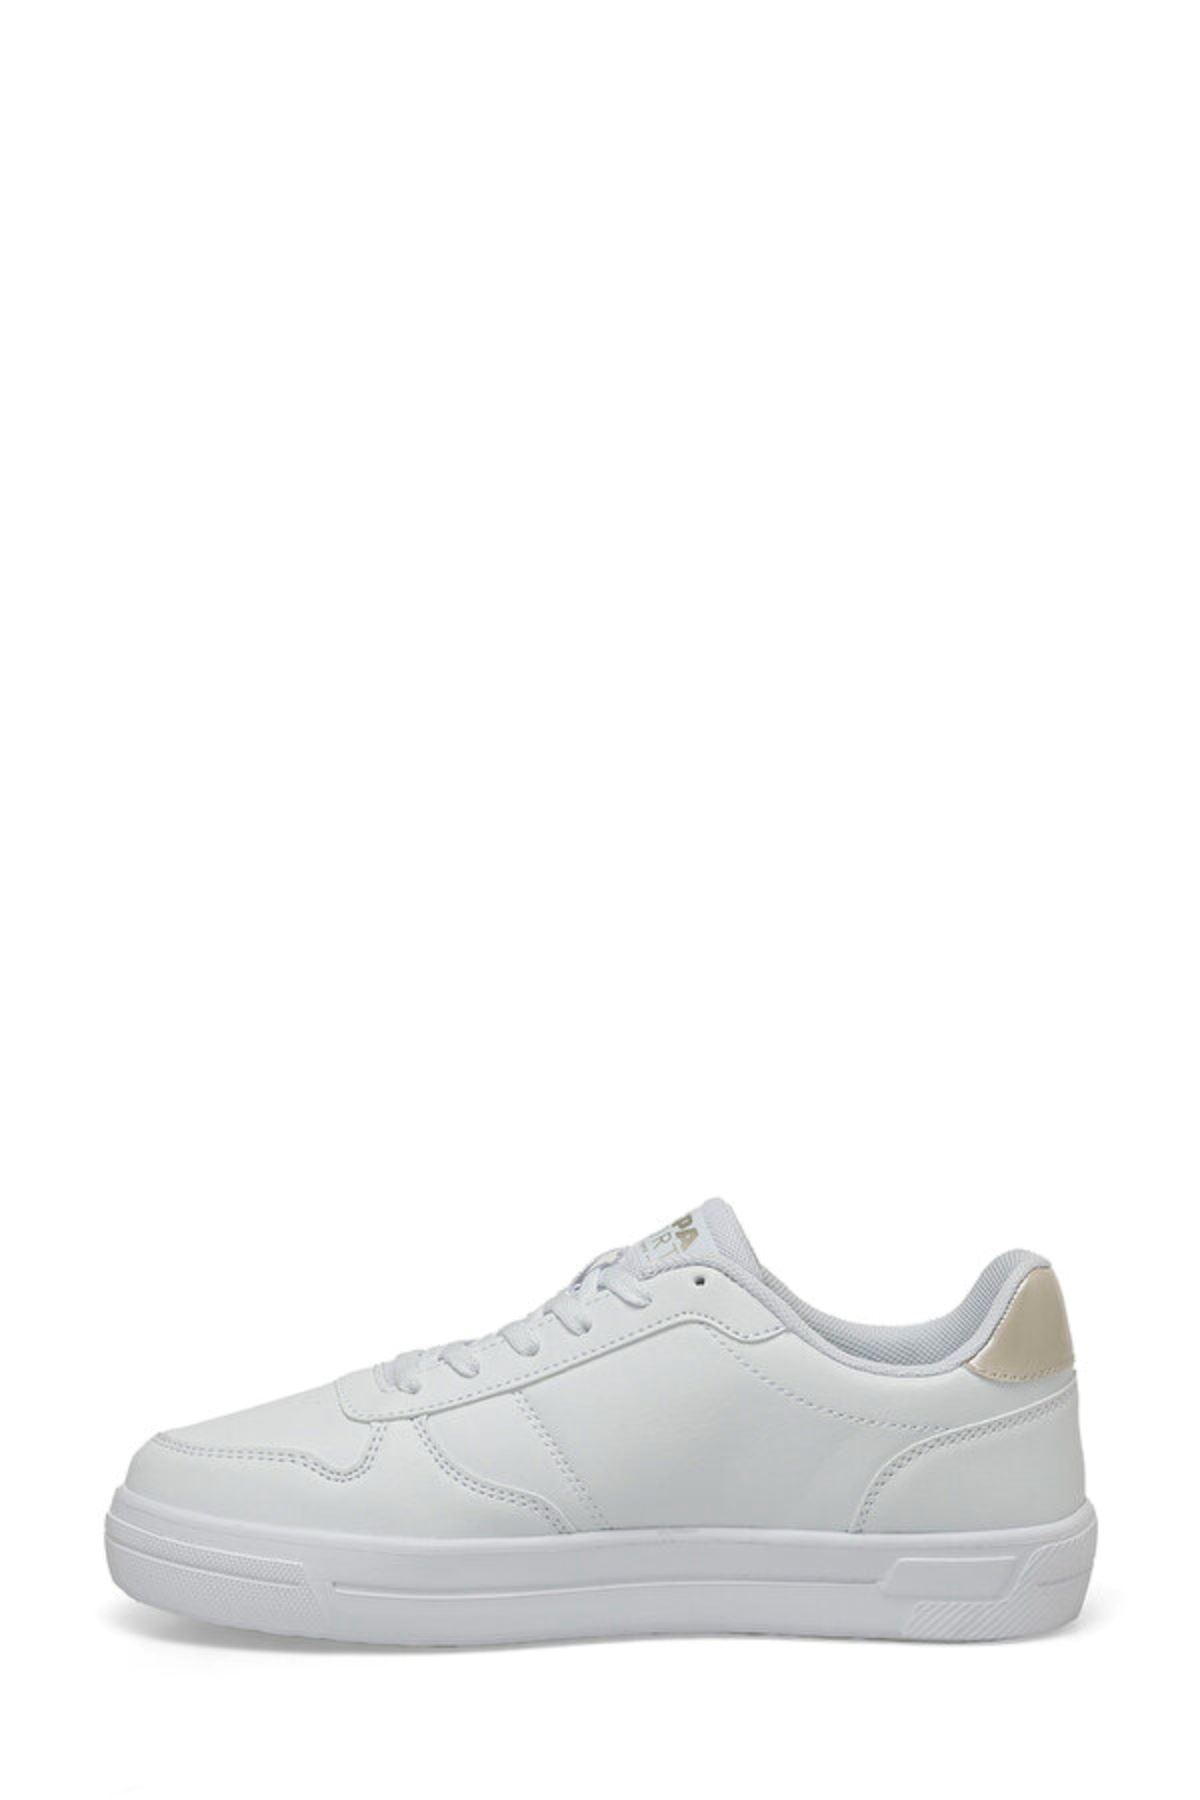 Ellıs 4Fx U.S. Polo Assn. Kadın Beyaz Spor Ayakkabı - 101501740